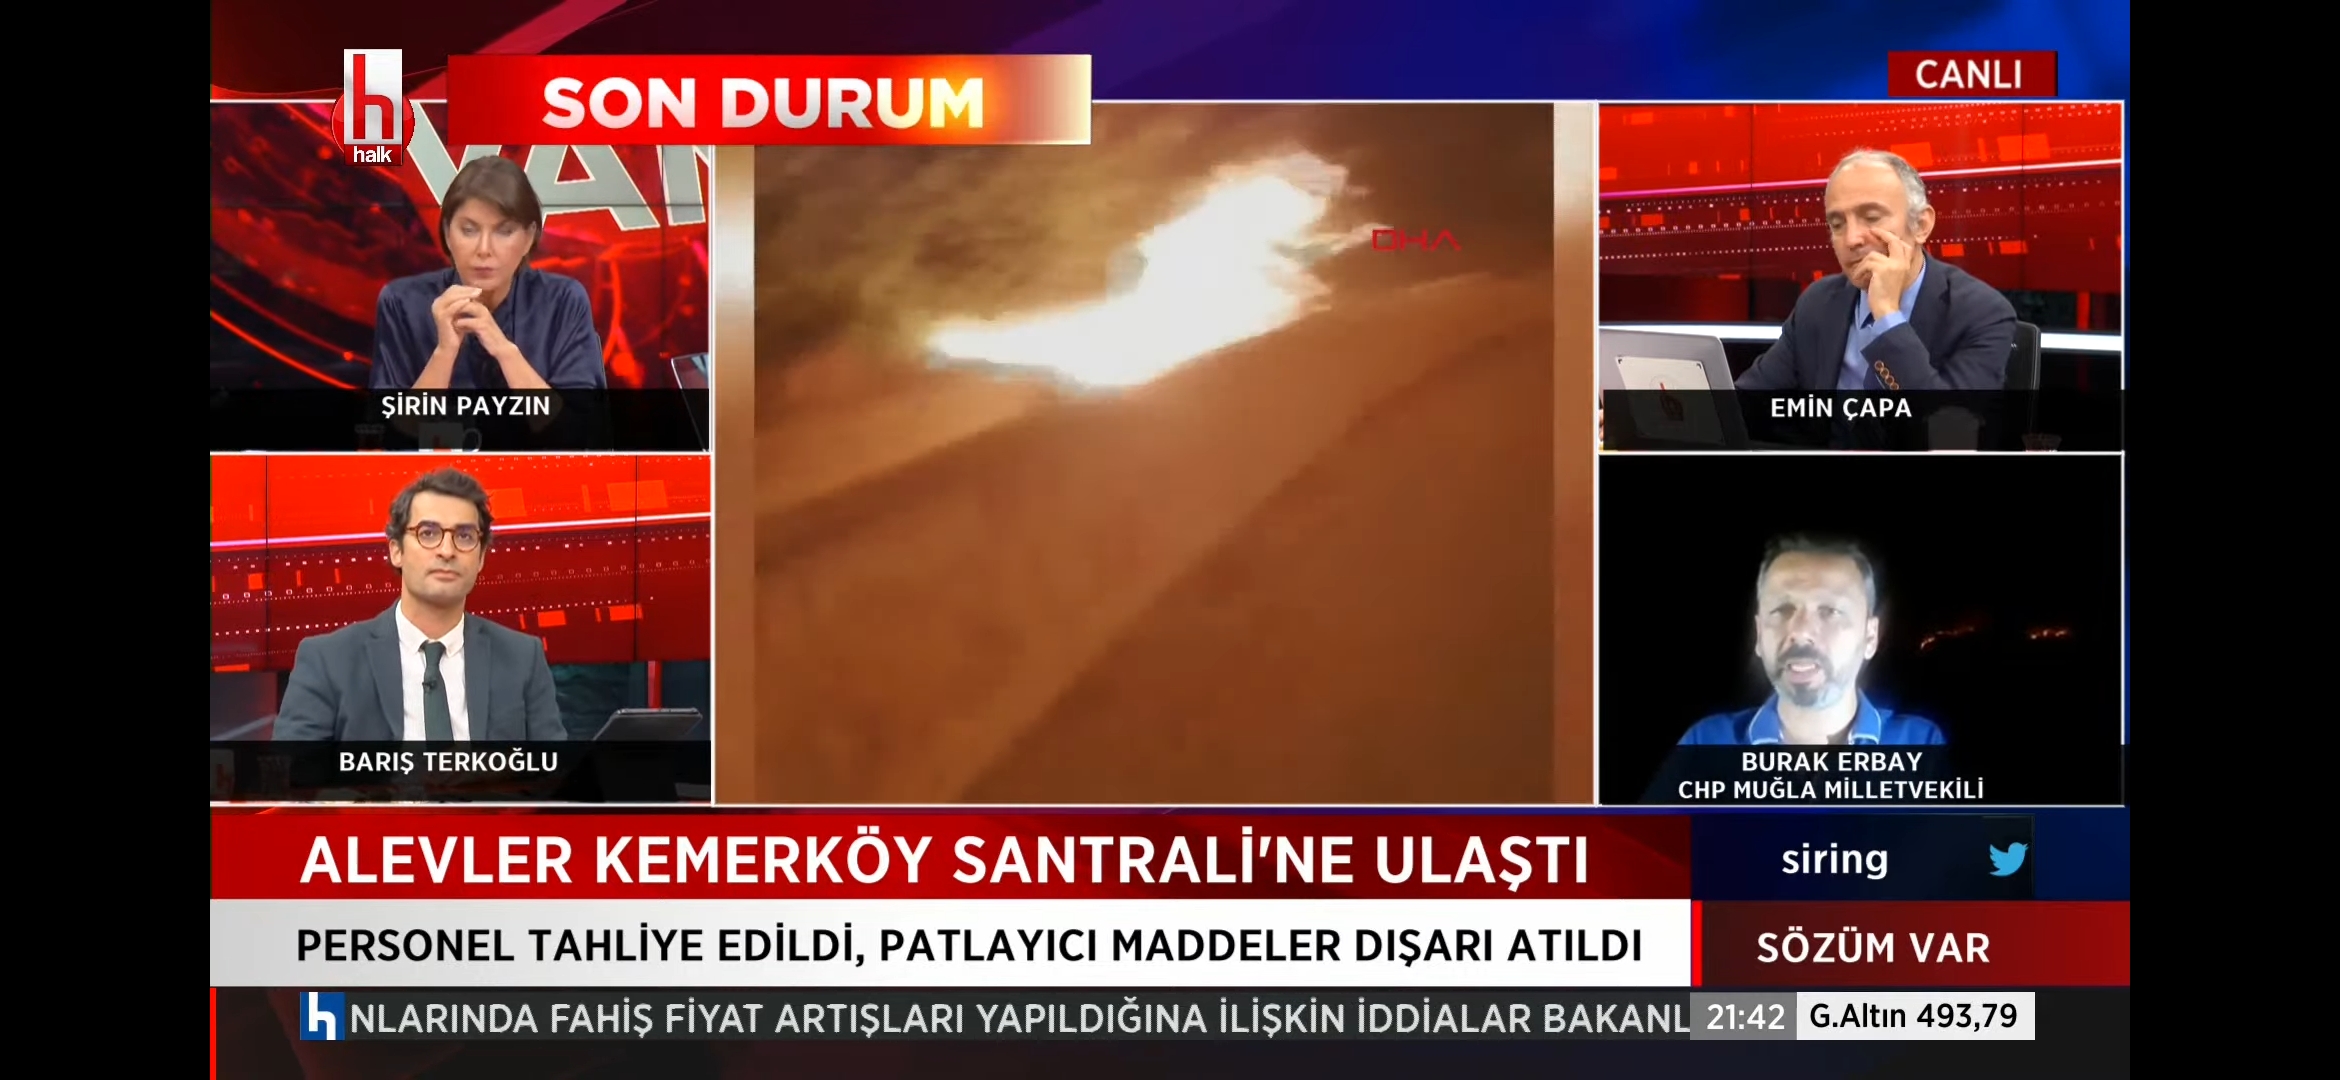 Milas Kemerköy'deki yangın, termik santrale ulaştı personel tahliye edildi ❗❗ halk da tahliye edildi